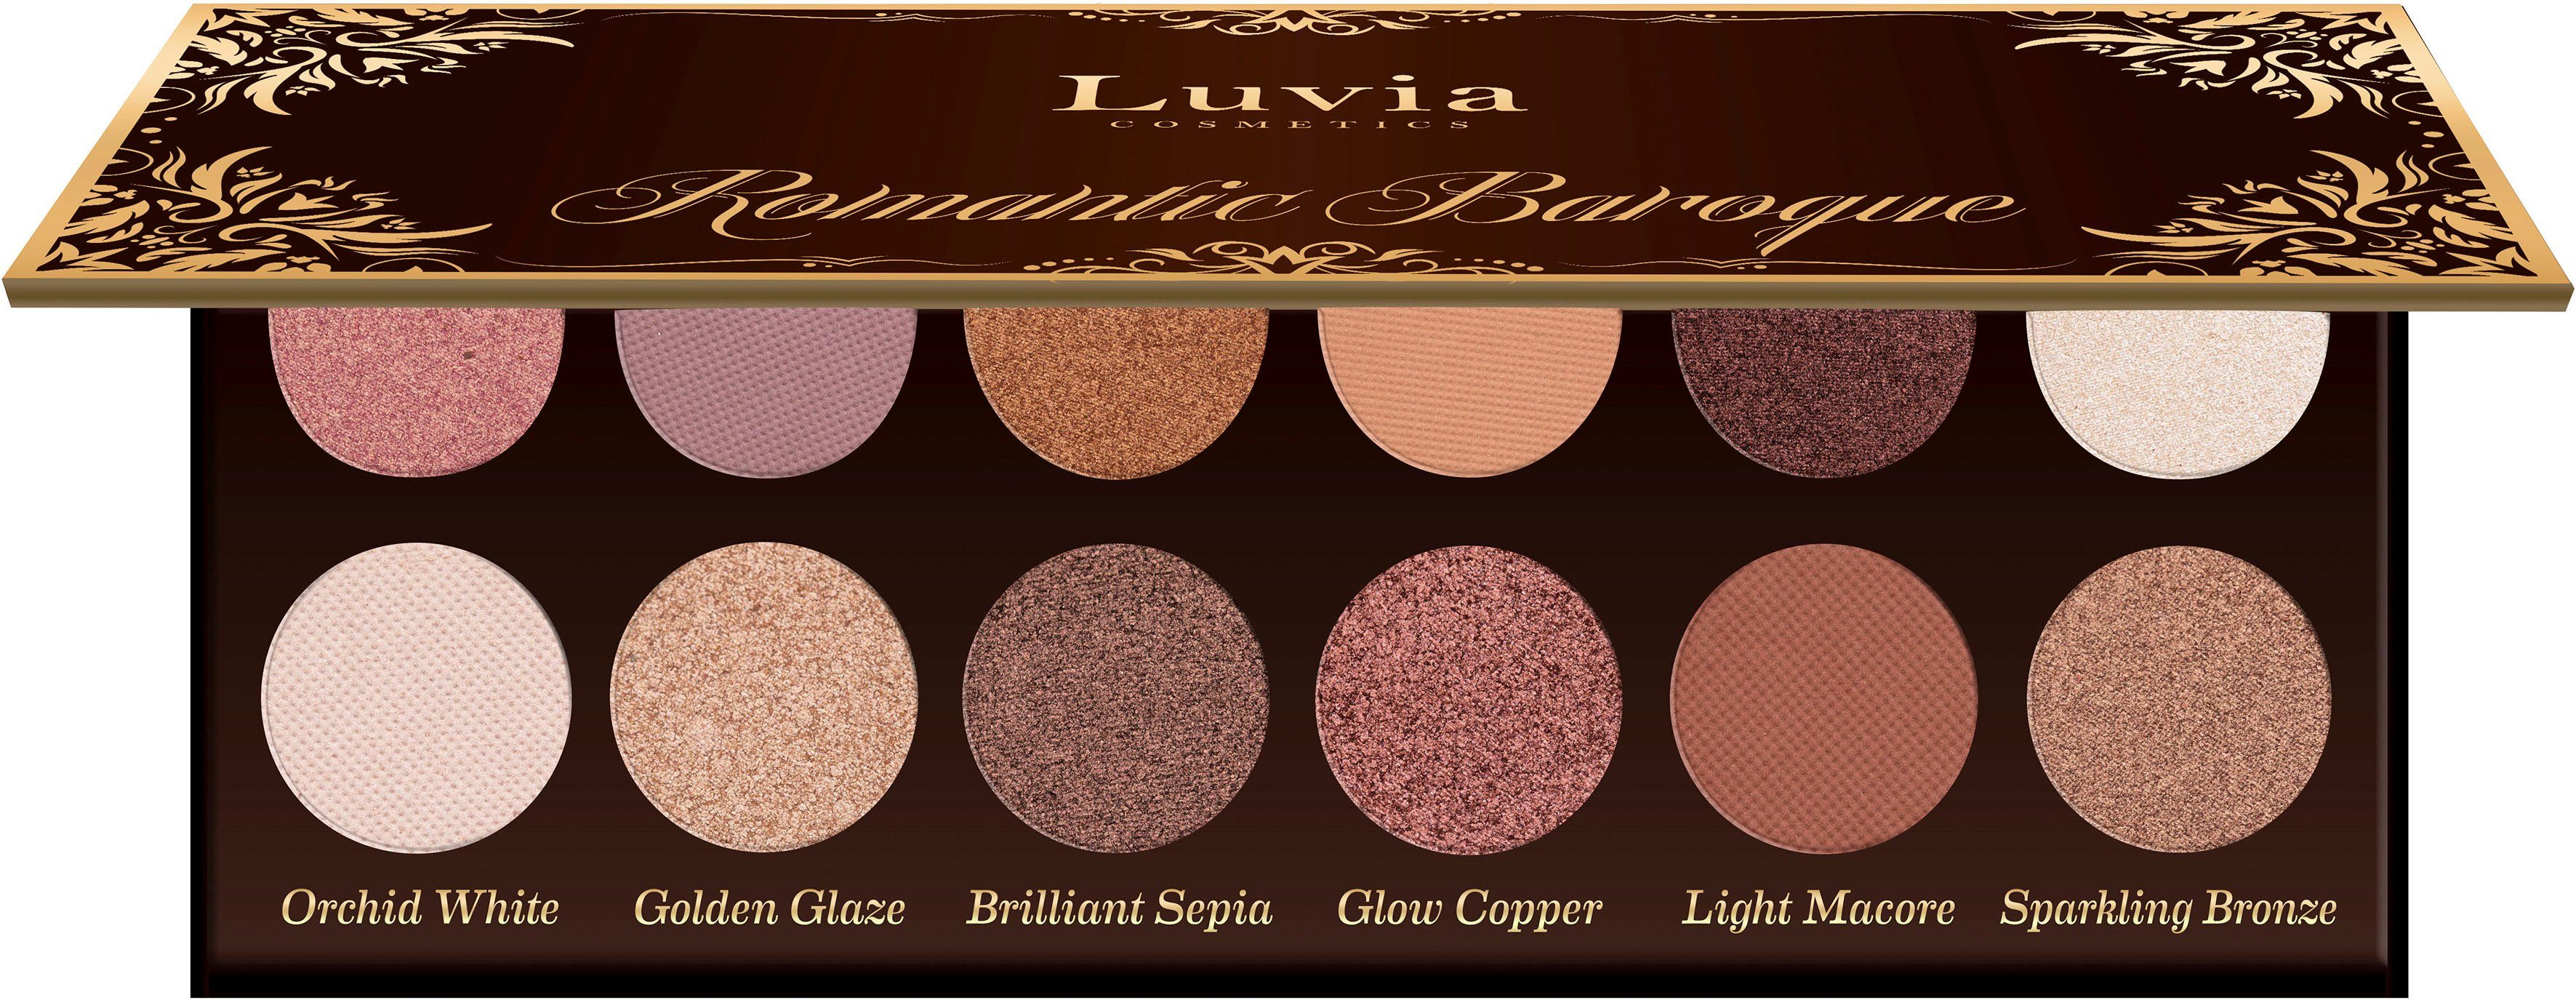 Vorzüglichkeiten Luvia Cosmetics Lidschatten-Palette Karmaflage goldfarben